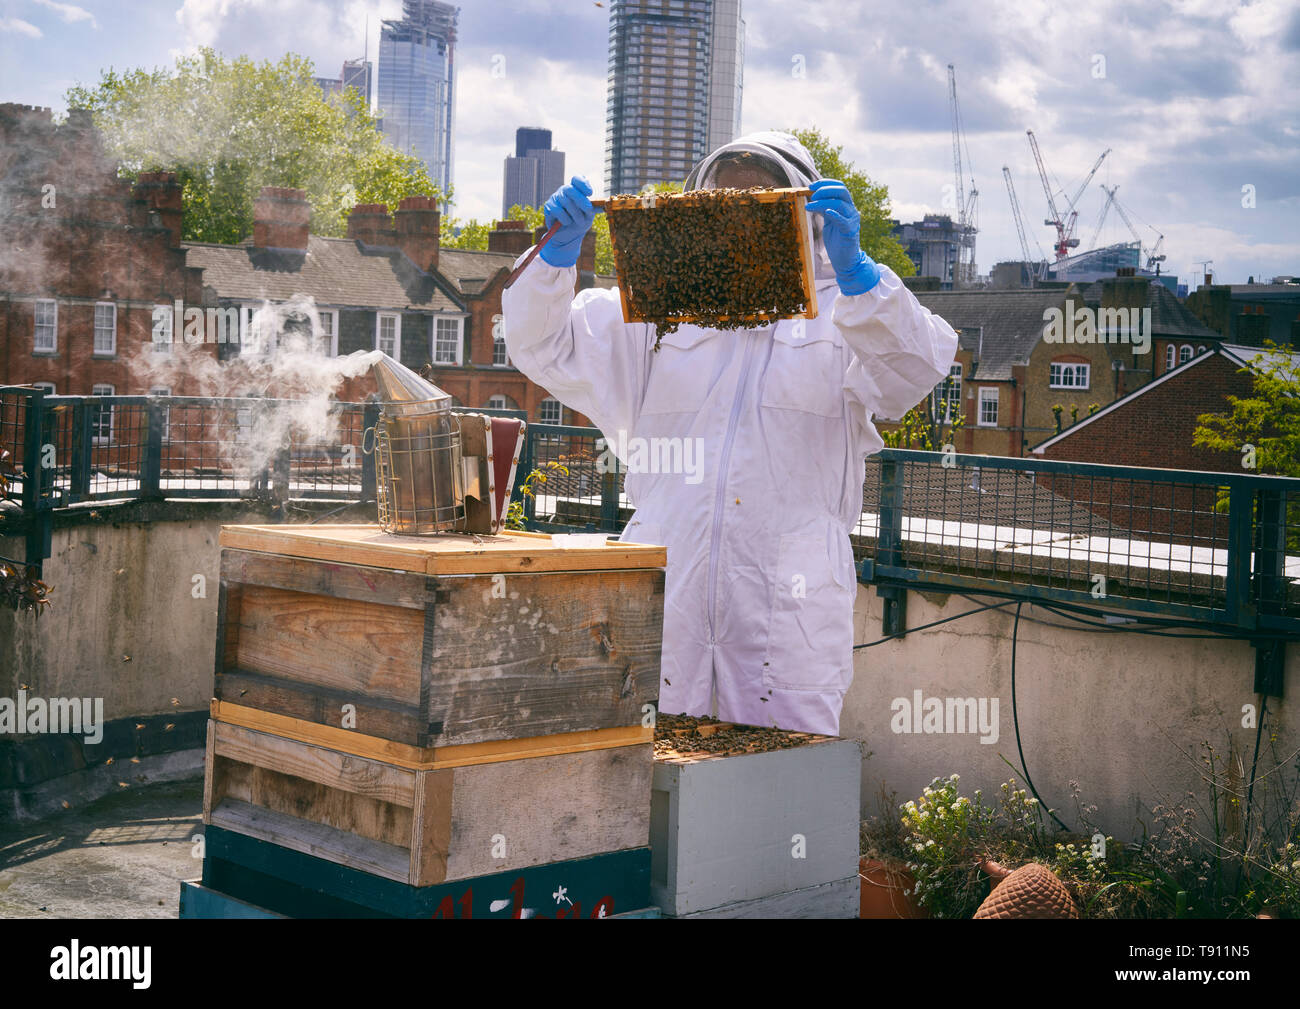 La apicultura urbana Foto de stock